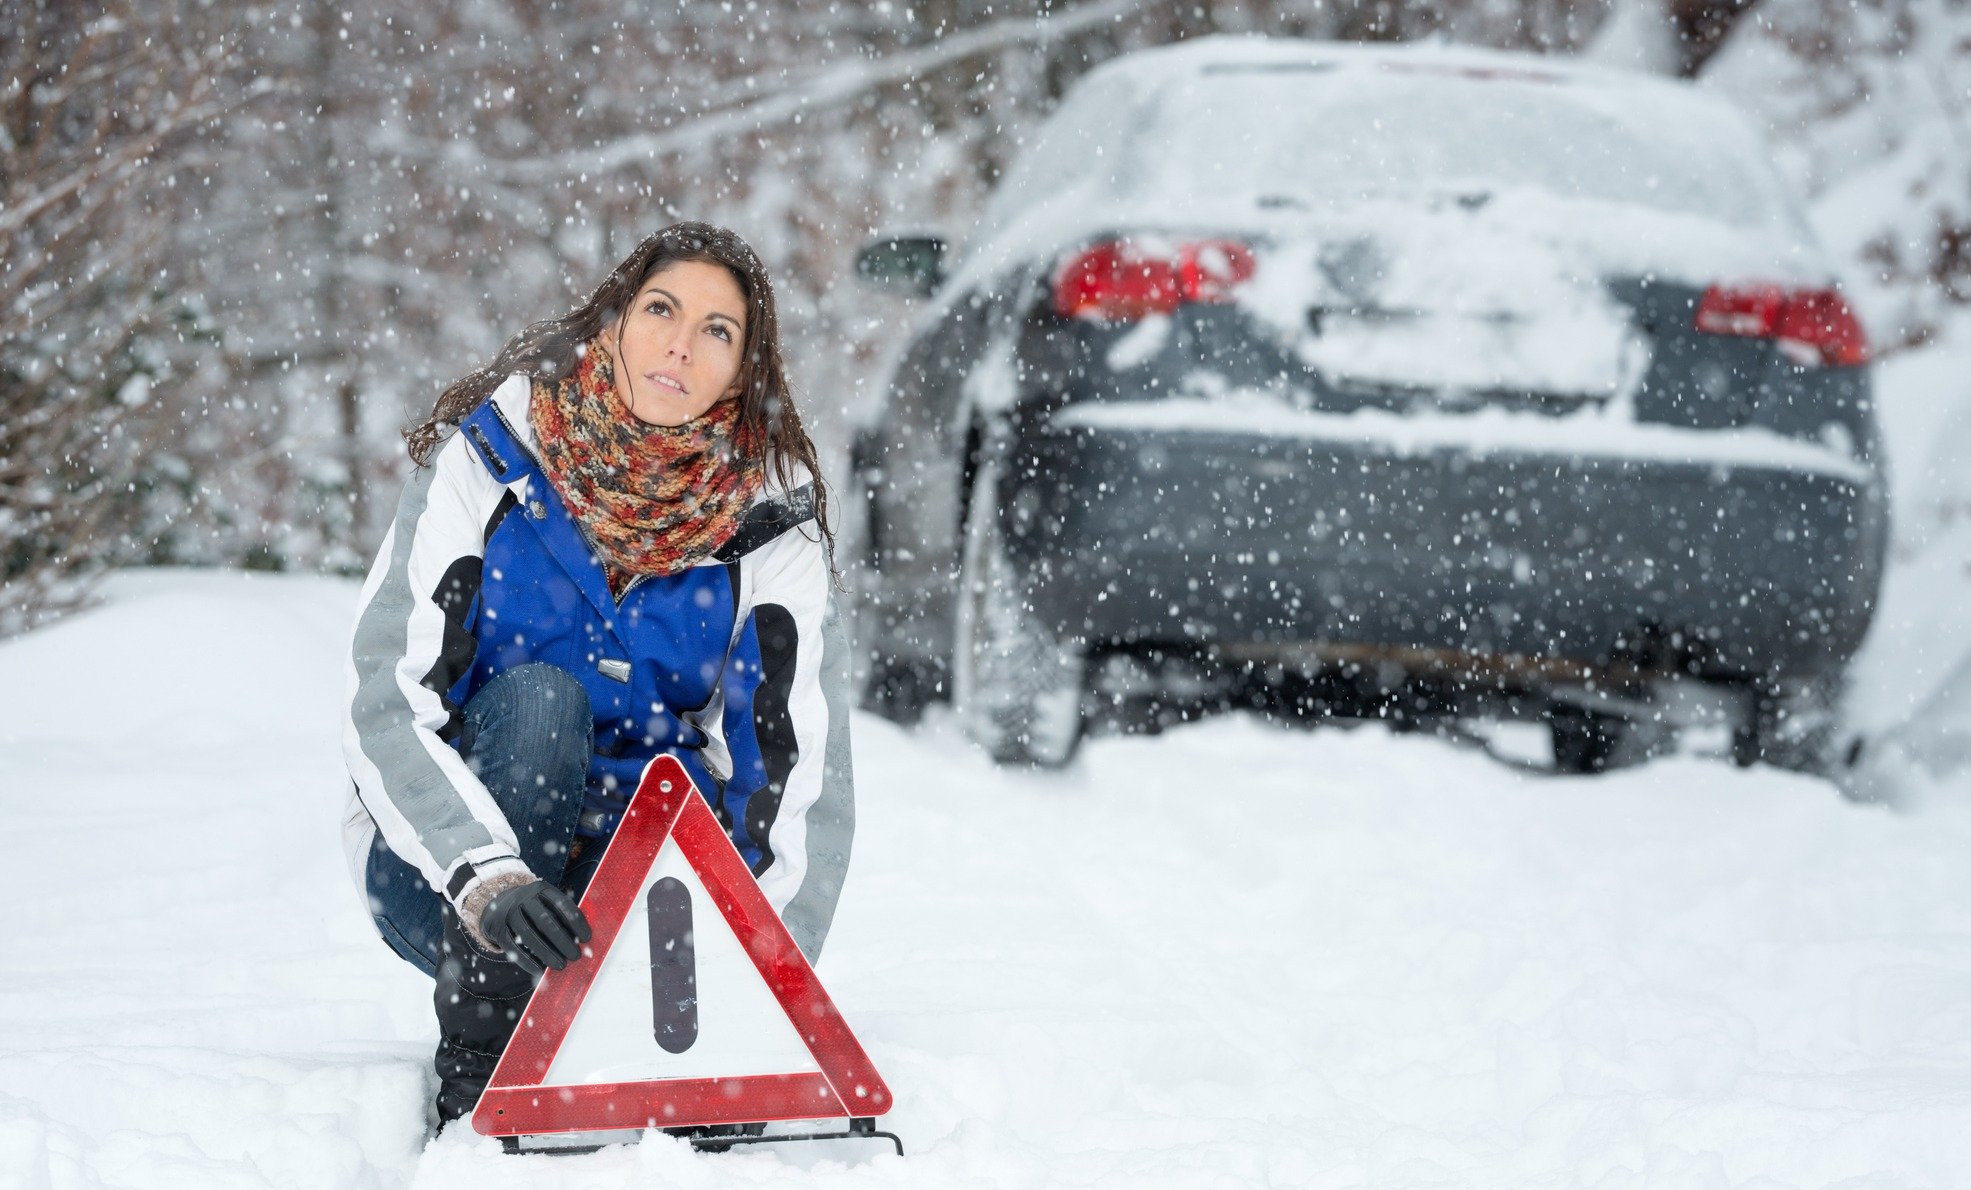 Женщина застряла в машинке. Машина в снегу. Машина застряла в снегу. Девушка зима машина. Женщина толкает машину снег.